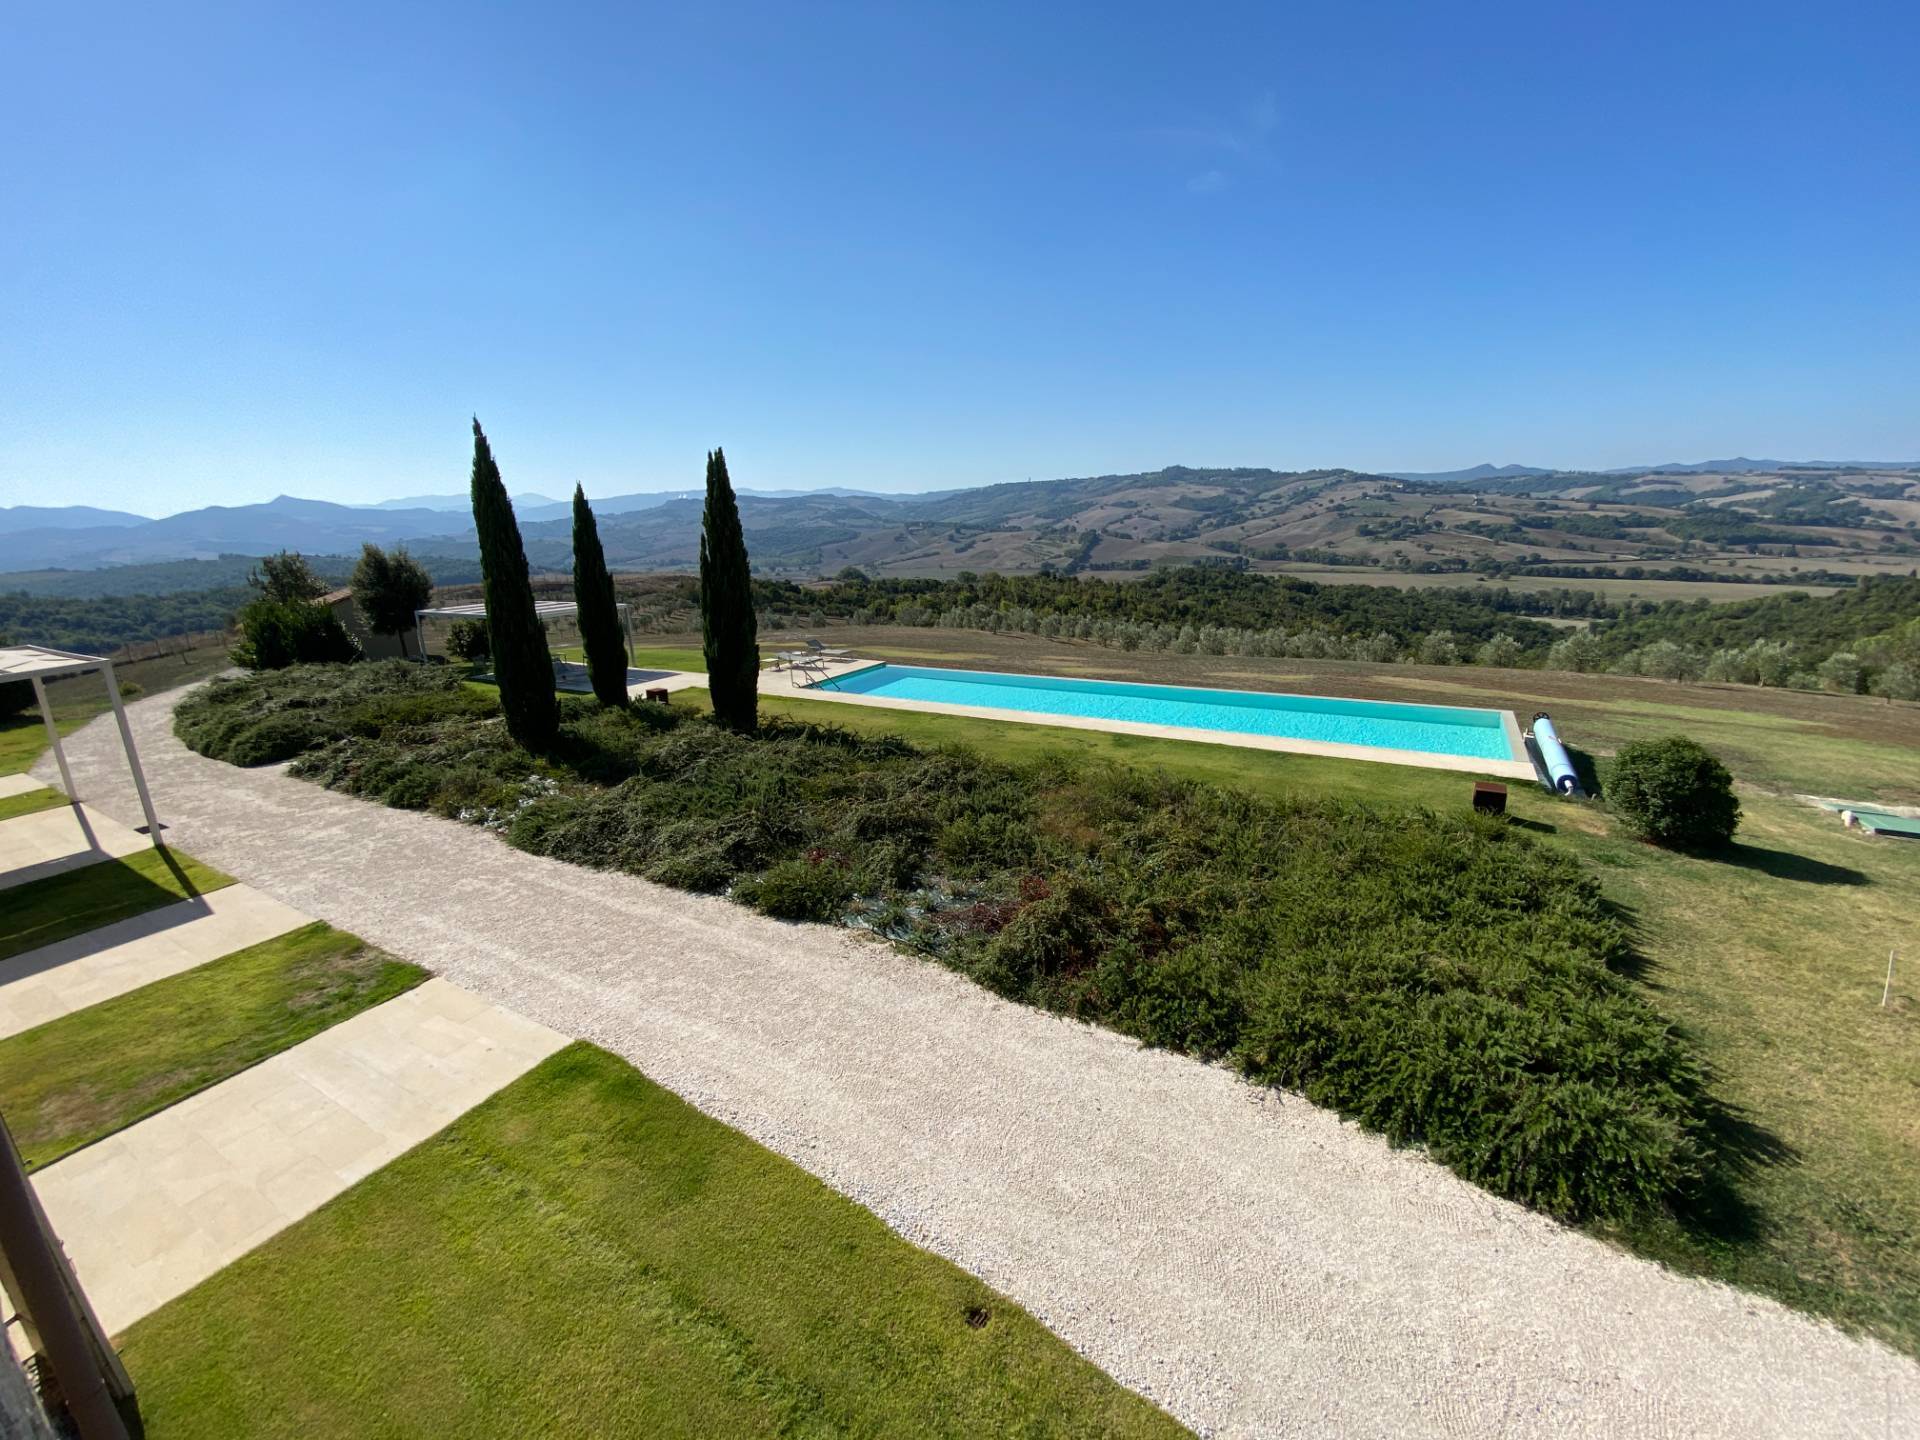 1538-Prtoprietà prestigiosa in un'oasi di pace e bellezza naturalistica-Volterra-2 Agenzia Immobiliare ASIP